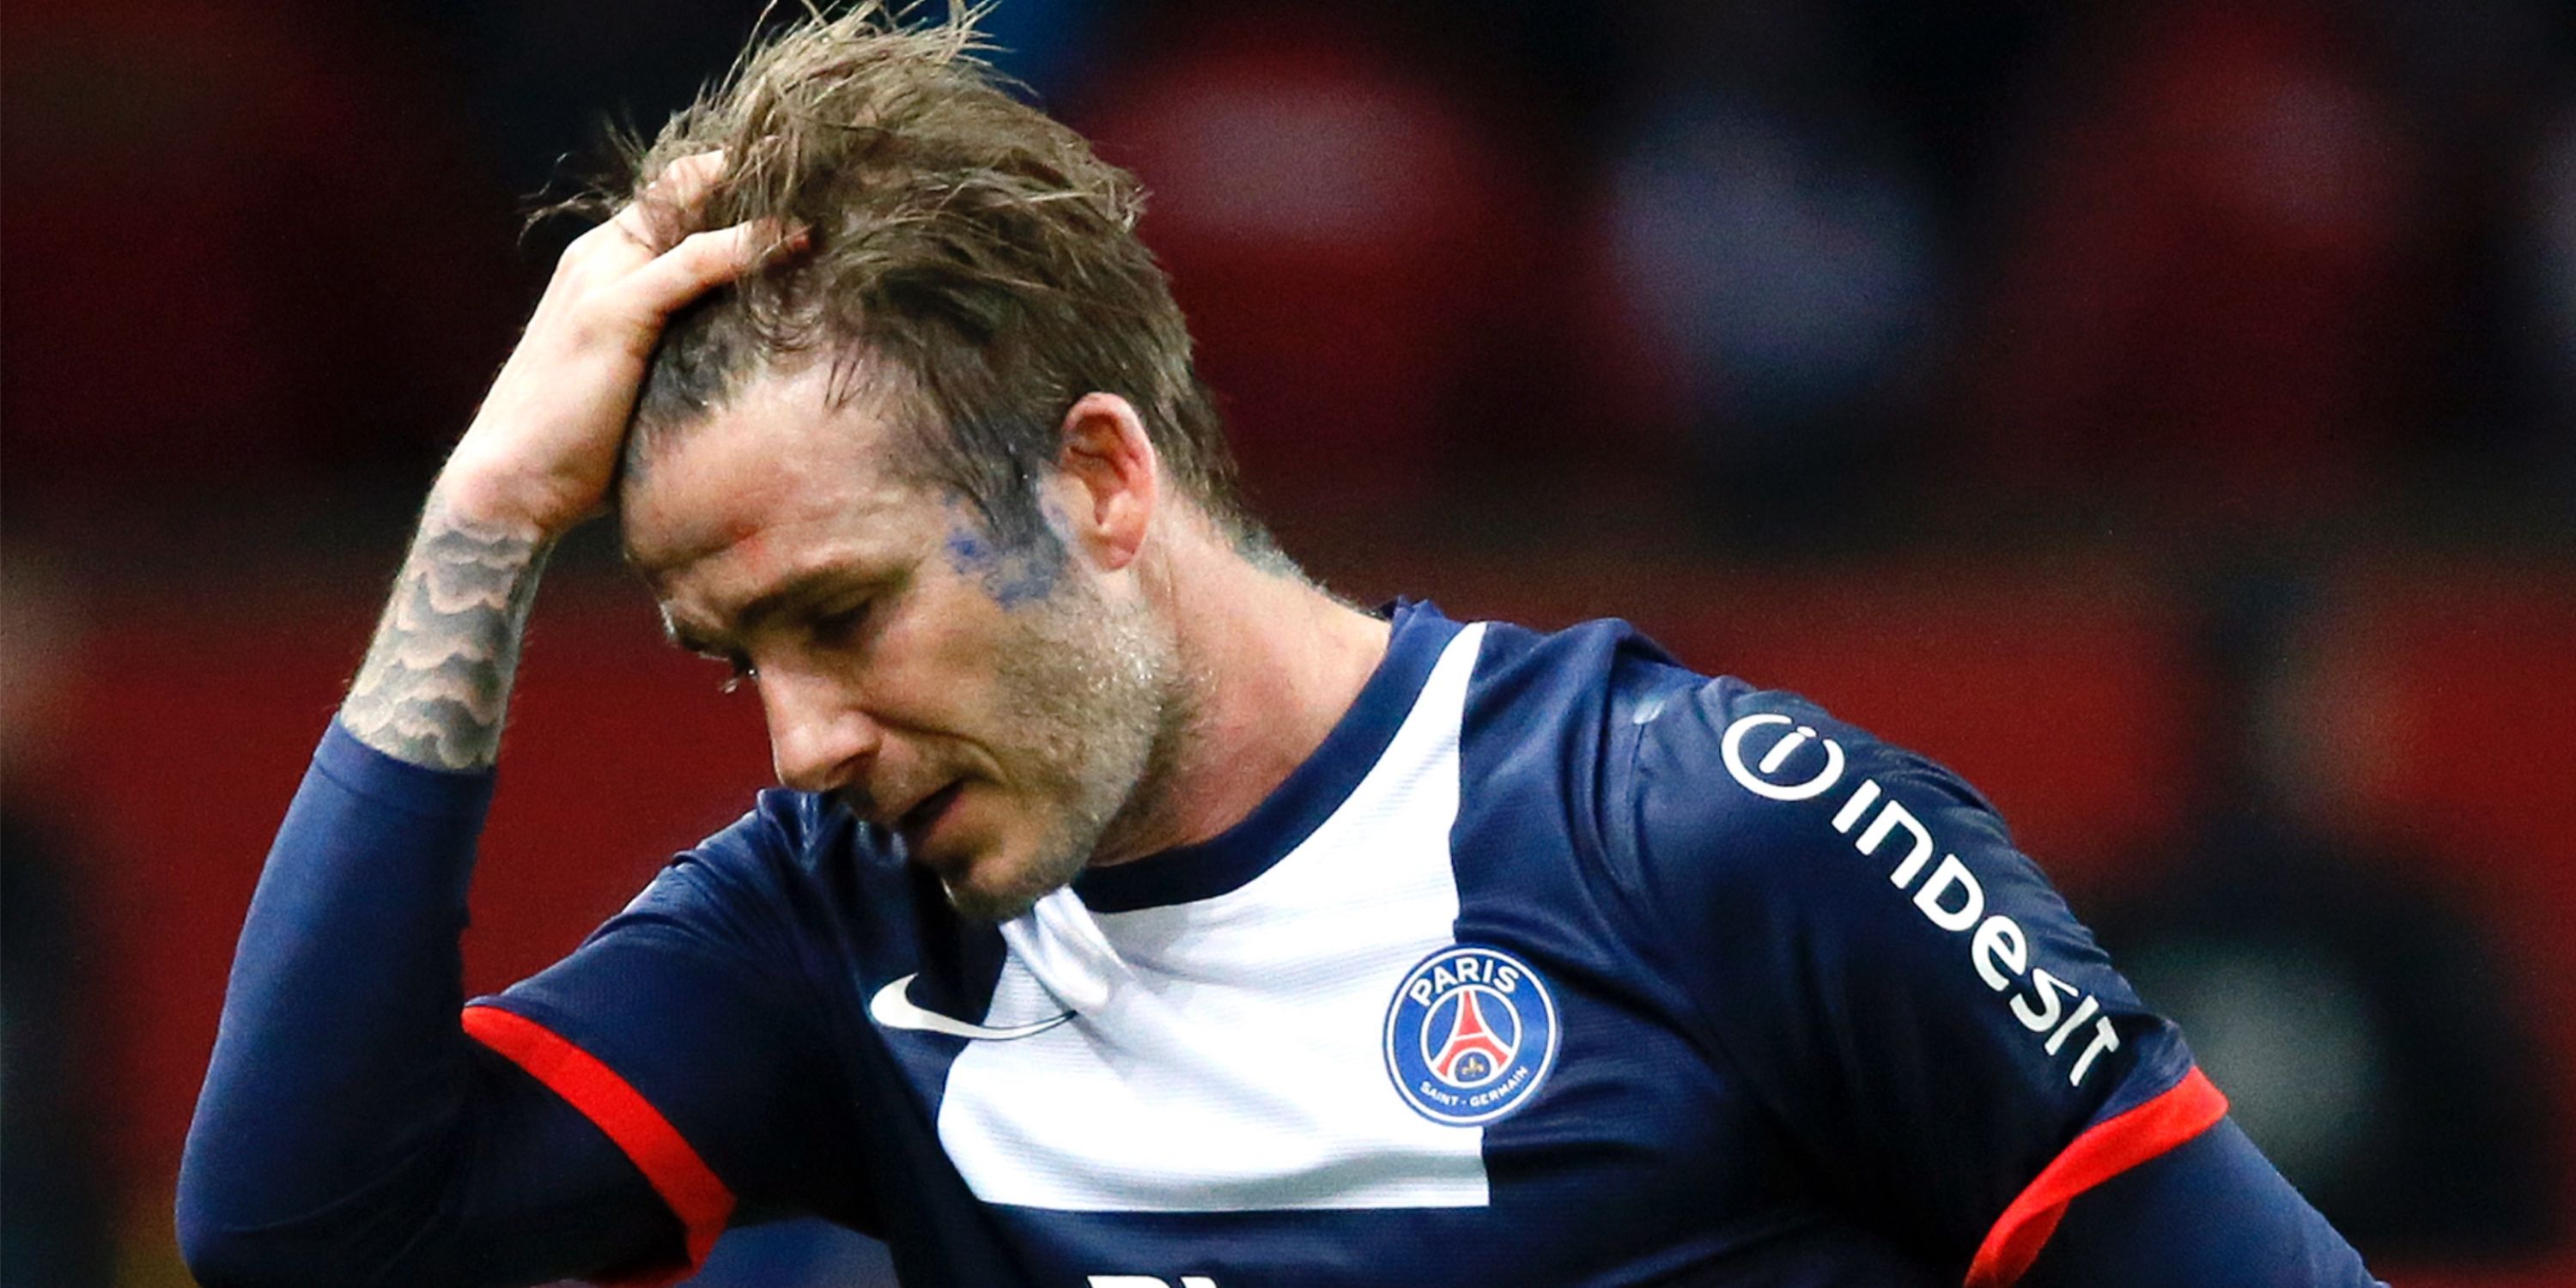 David Beckham cries